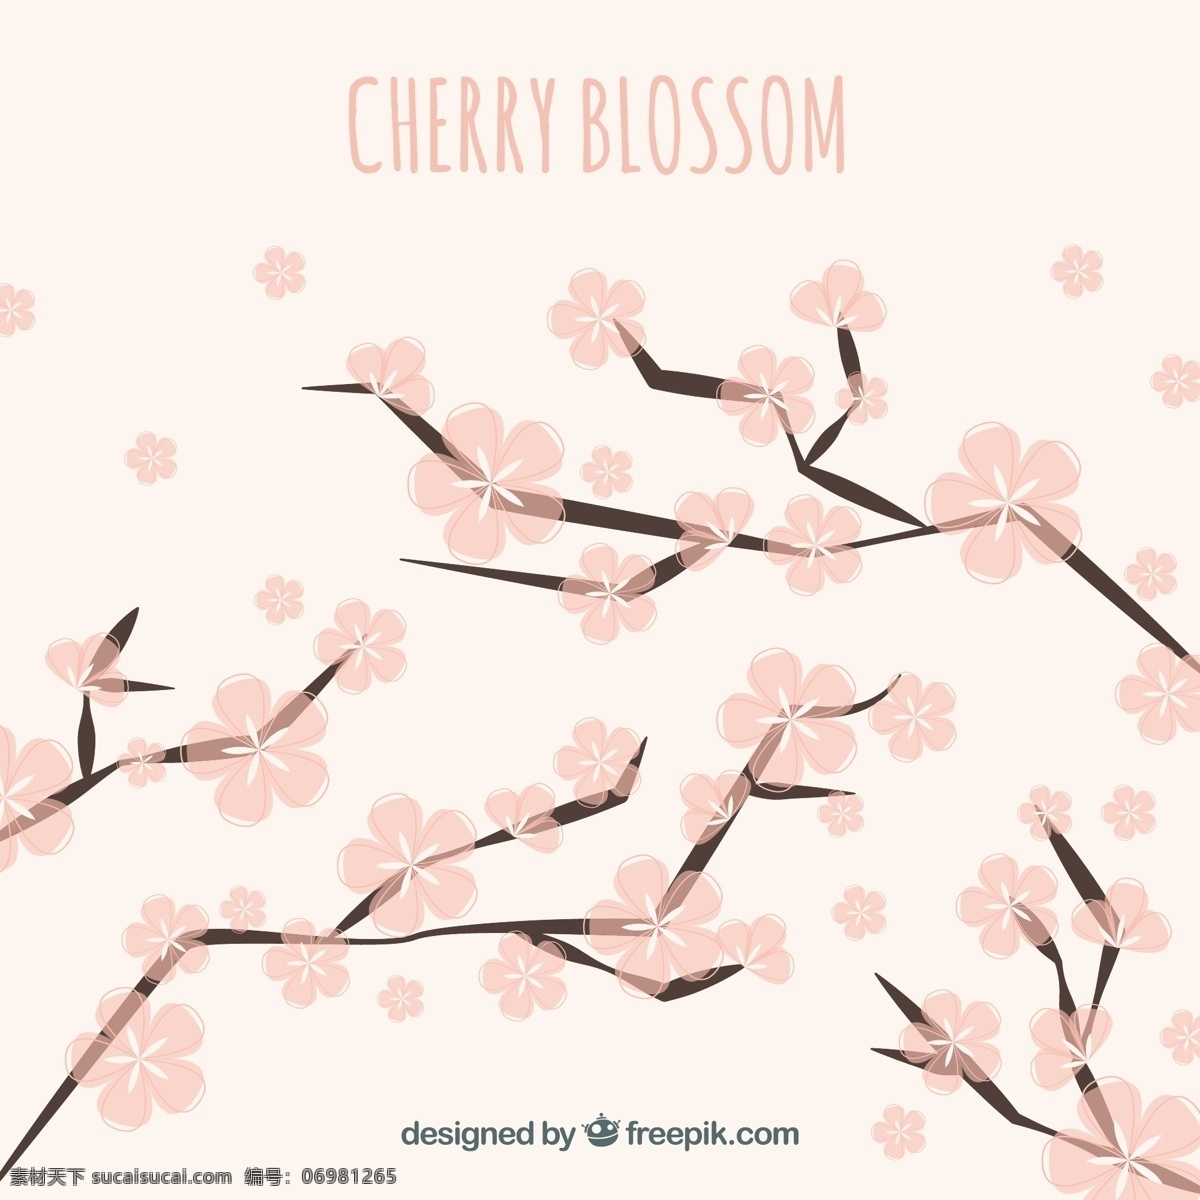 美丽 背景 树枝 粉红色 花朵 花卉 自然 花卉背景 春季 平面 植物 装饰 樱花 平面设计 自然背景 樱桃